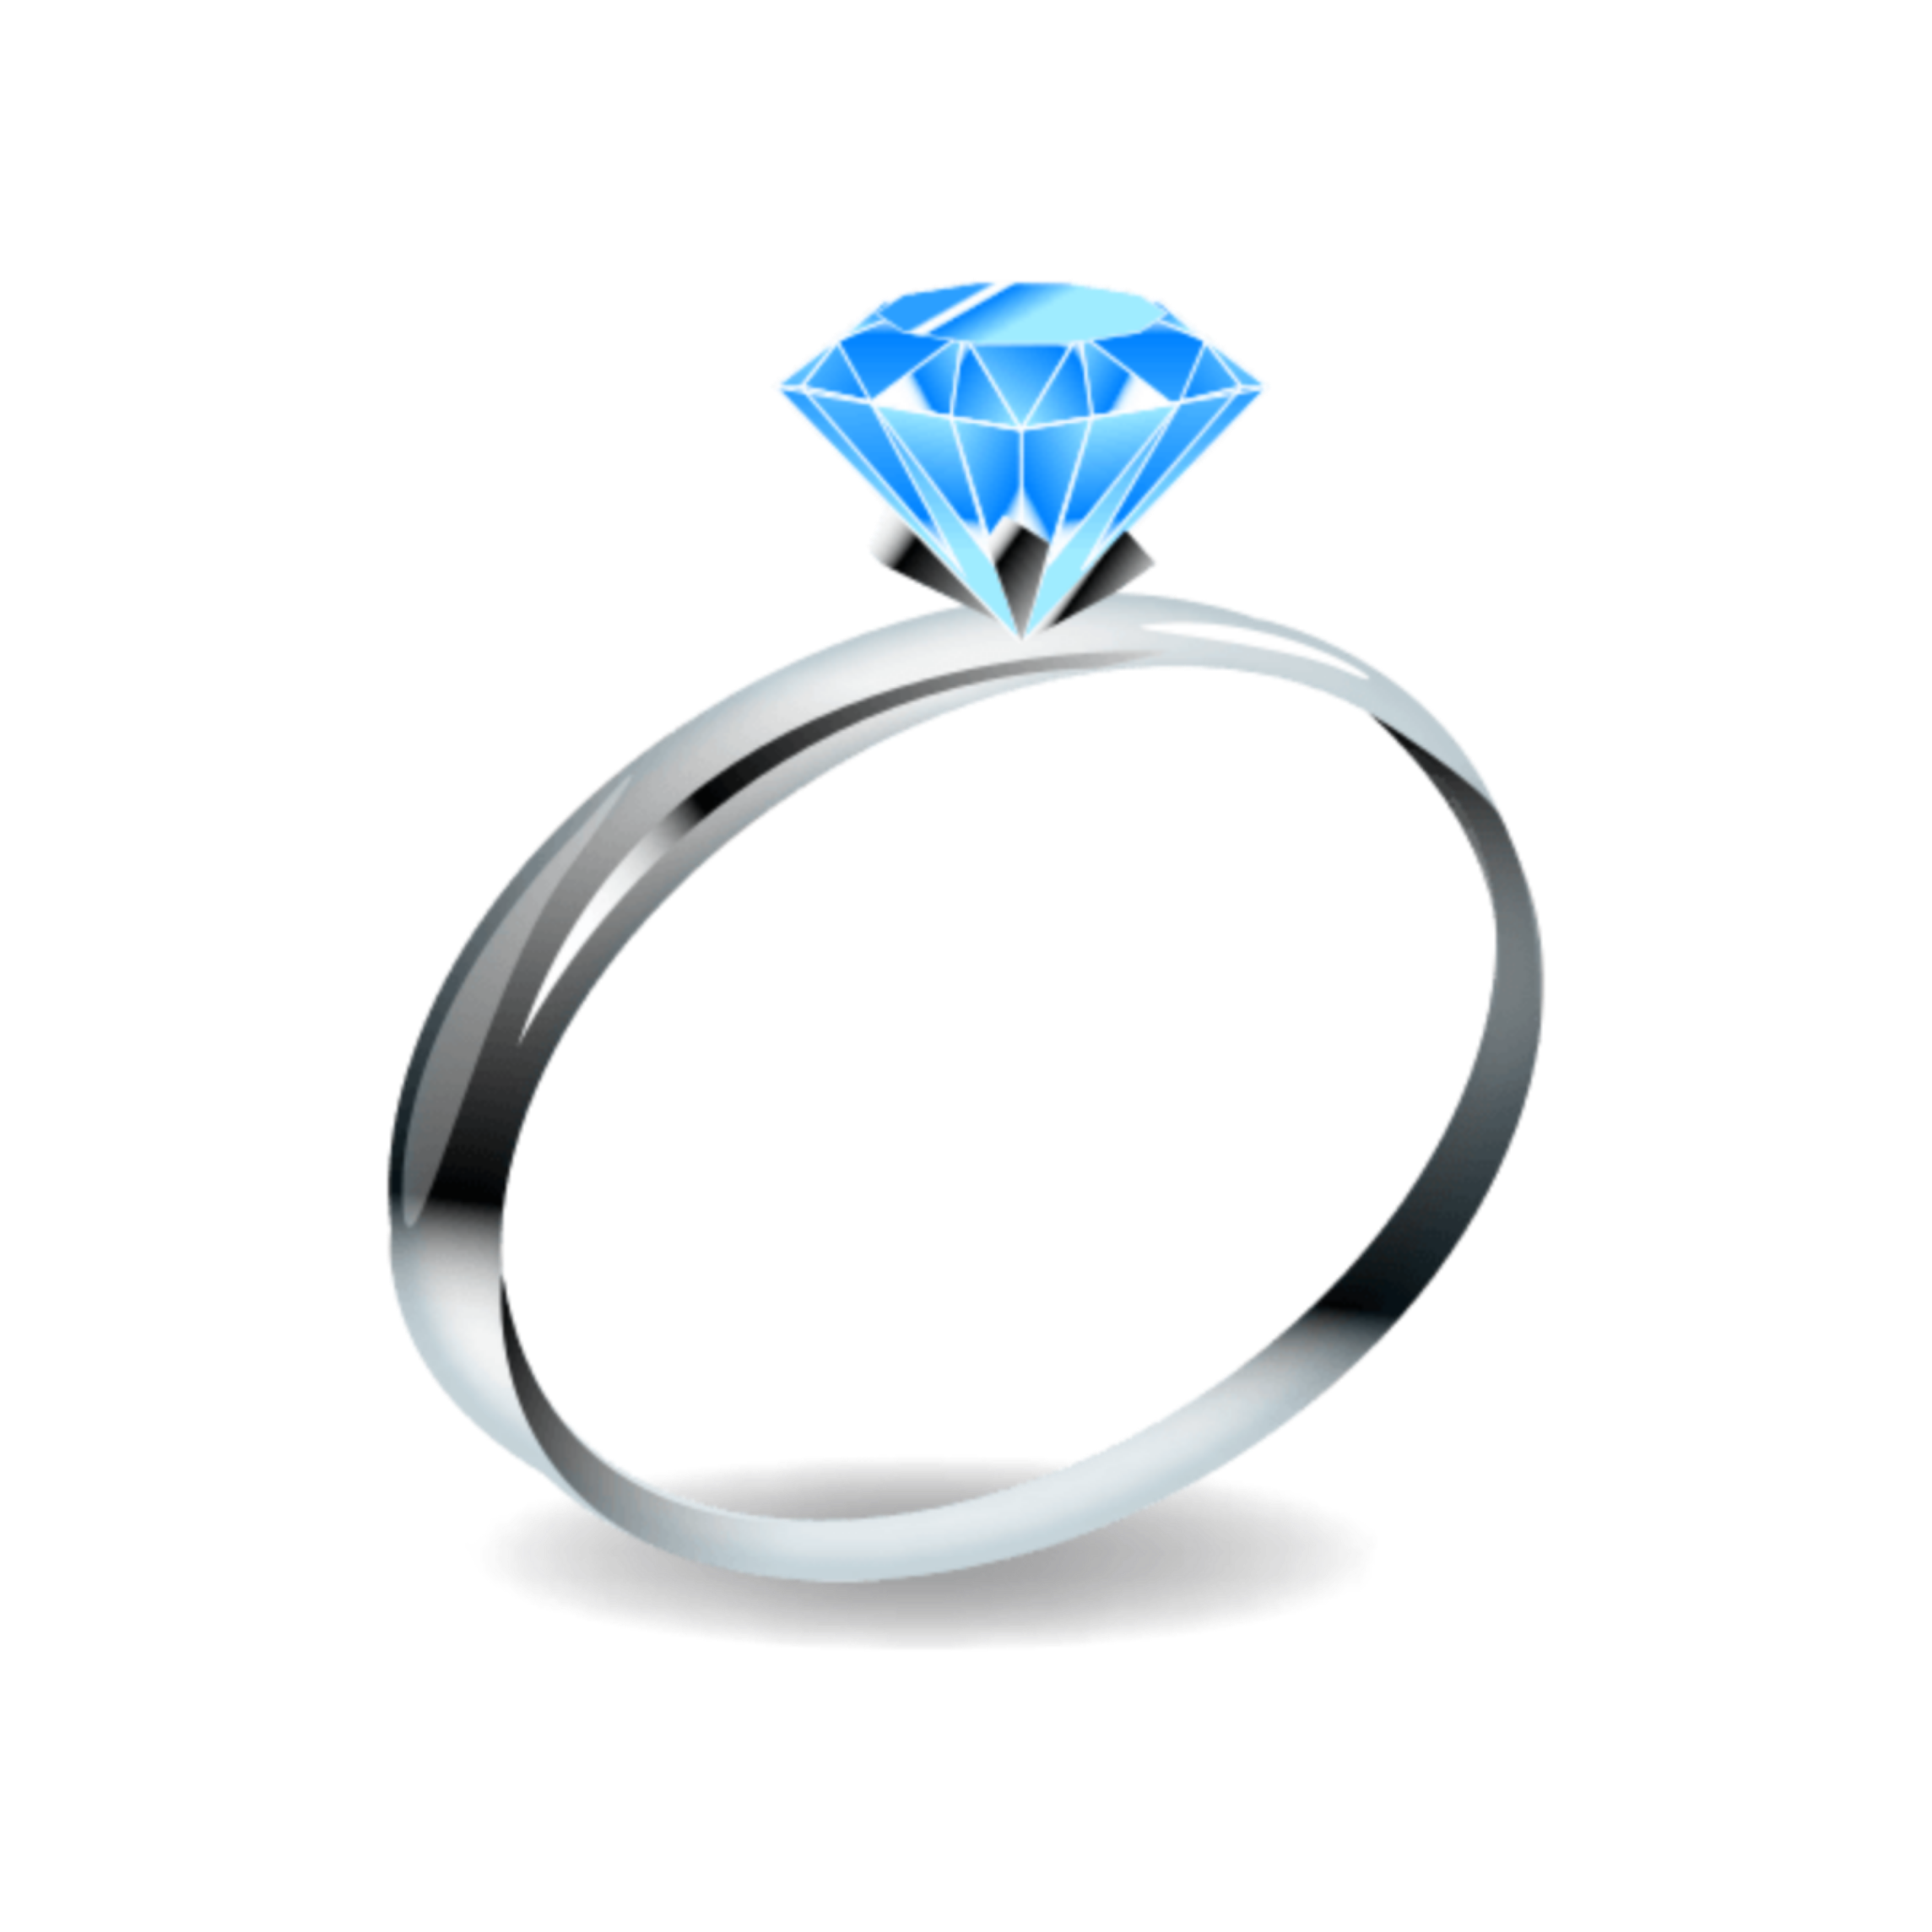 Кольцо с бриллиантом. ЭМОДЖИ кольцо с бриллиантом. Кольцо с голубым бриллиантом. Колечко стикер. Эмодзи кольцо